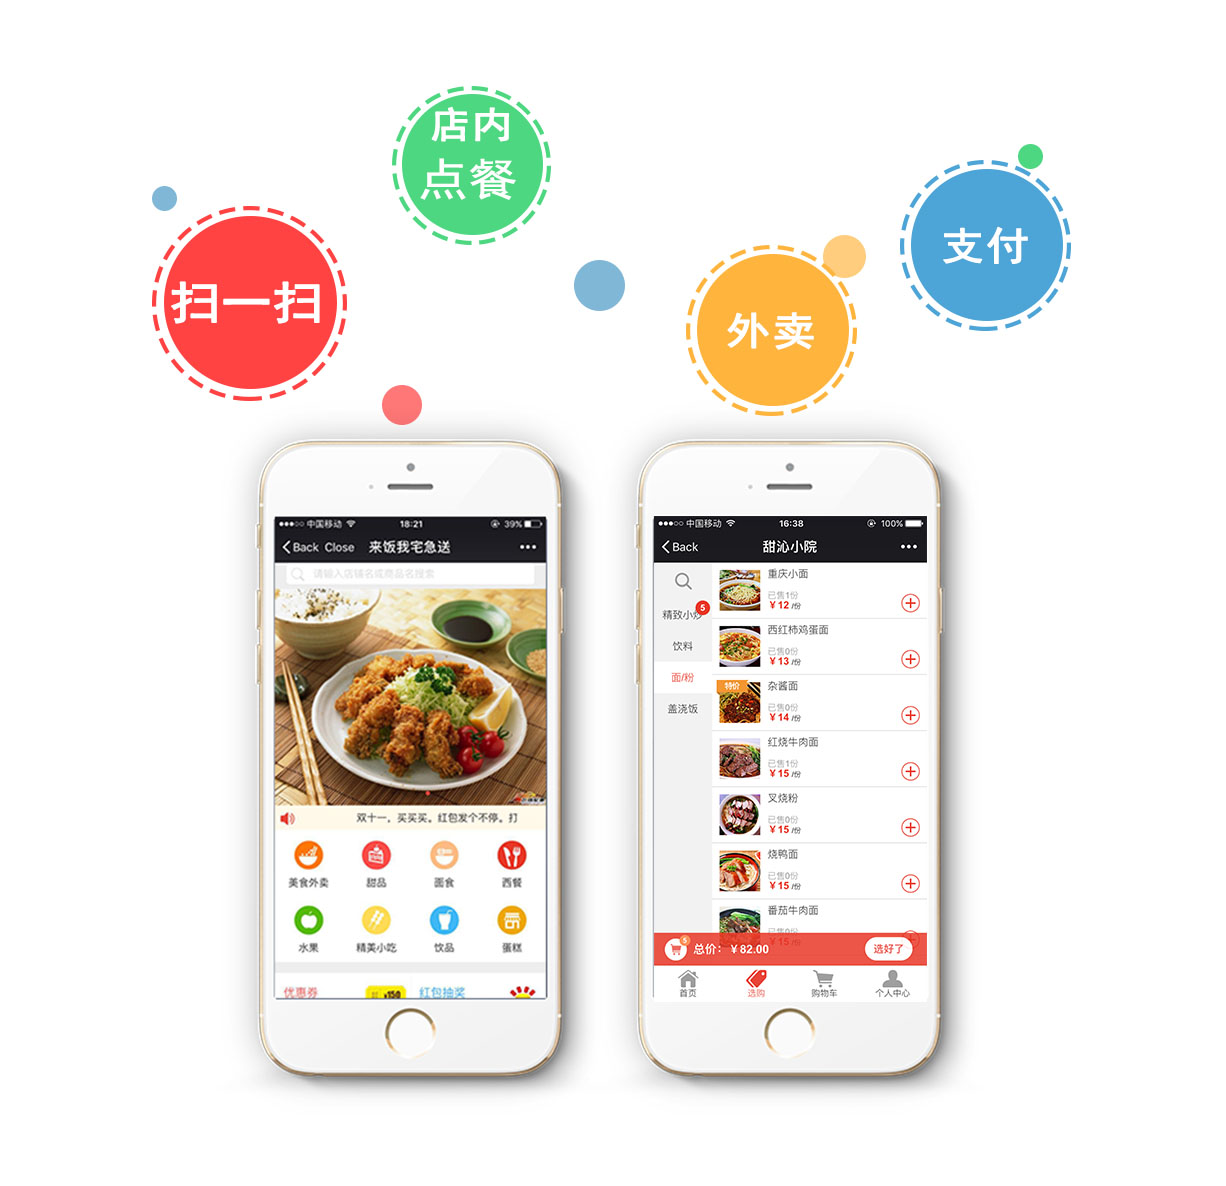 乐外卖智慧餐饮微信订餐系统：让餐厅生意不再难做